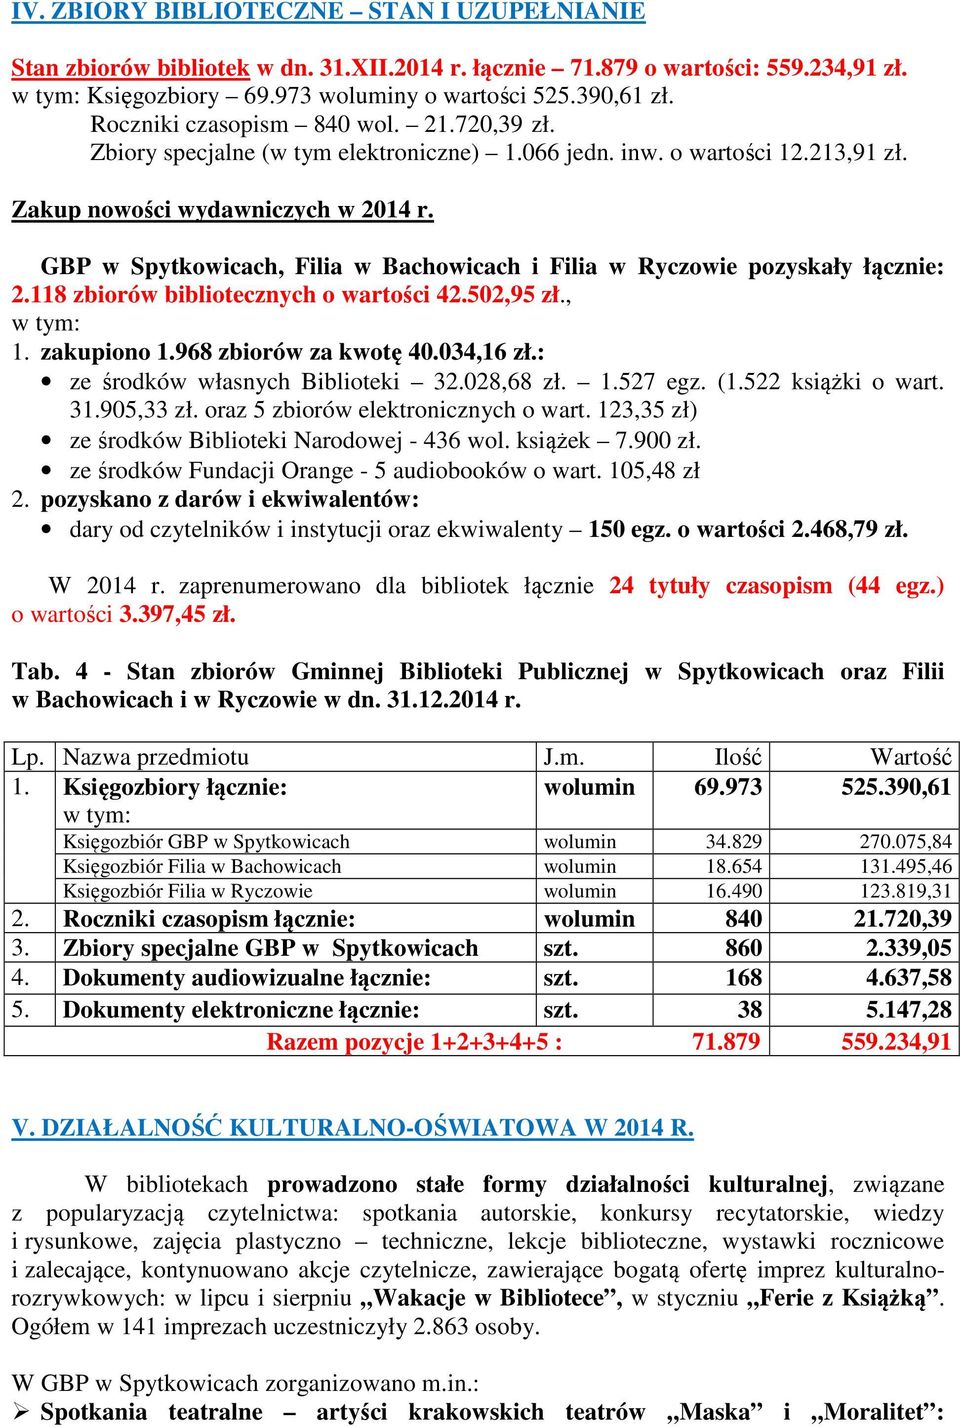 GBP w Spytkowicach, Filia w Bachowicach i Filia w Ryczowie pozyskały łącznie: 2.118 zbiorów bibliotecznych o wartości 42.502,95 zł., w tym: 1. zakupiono 1.968 zbiorów za kwotę 40.034,16 zł.